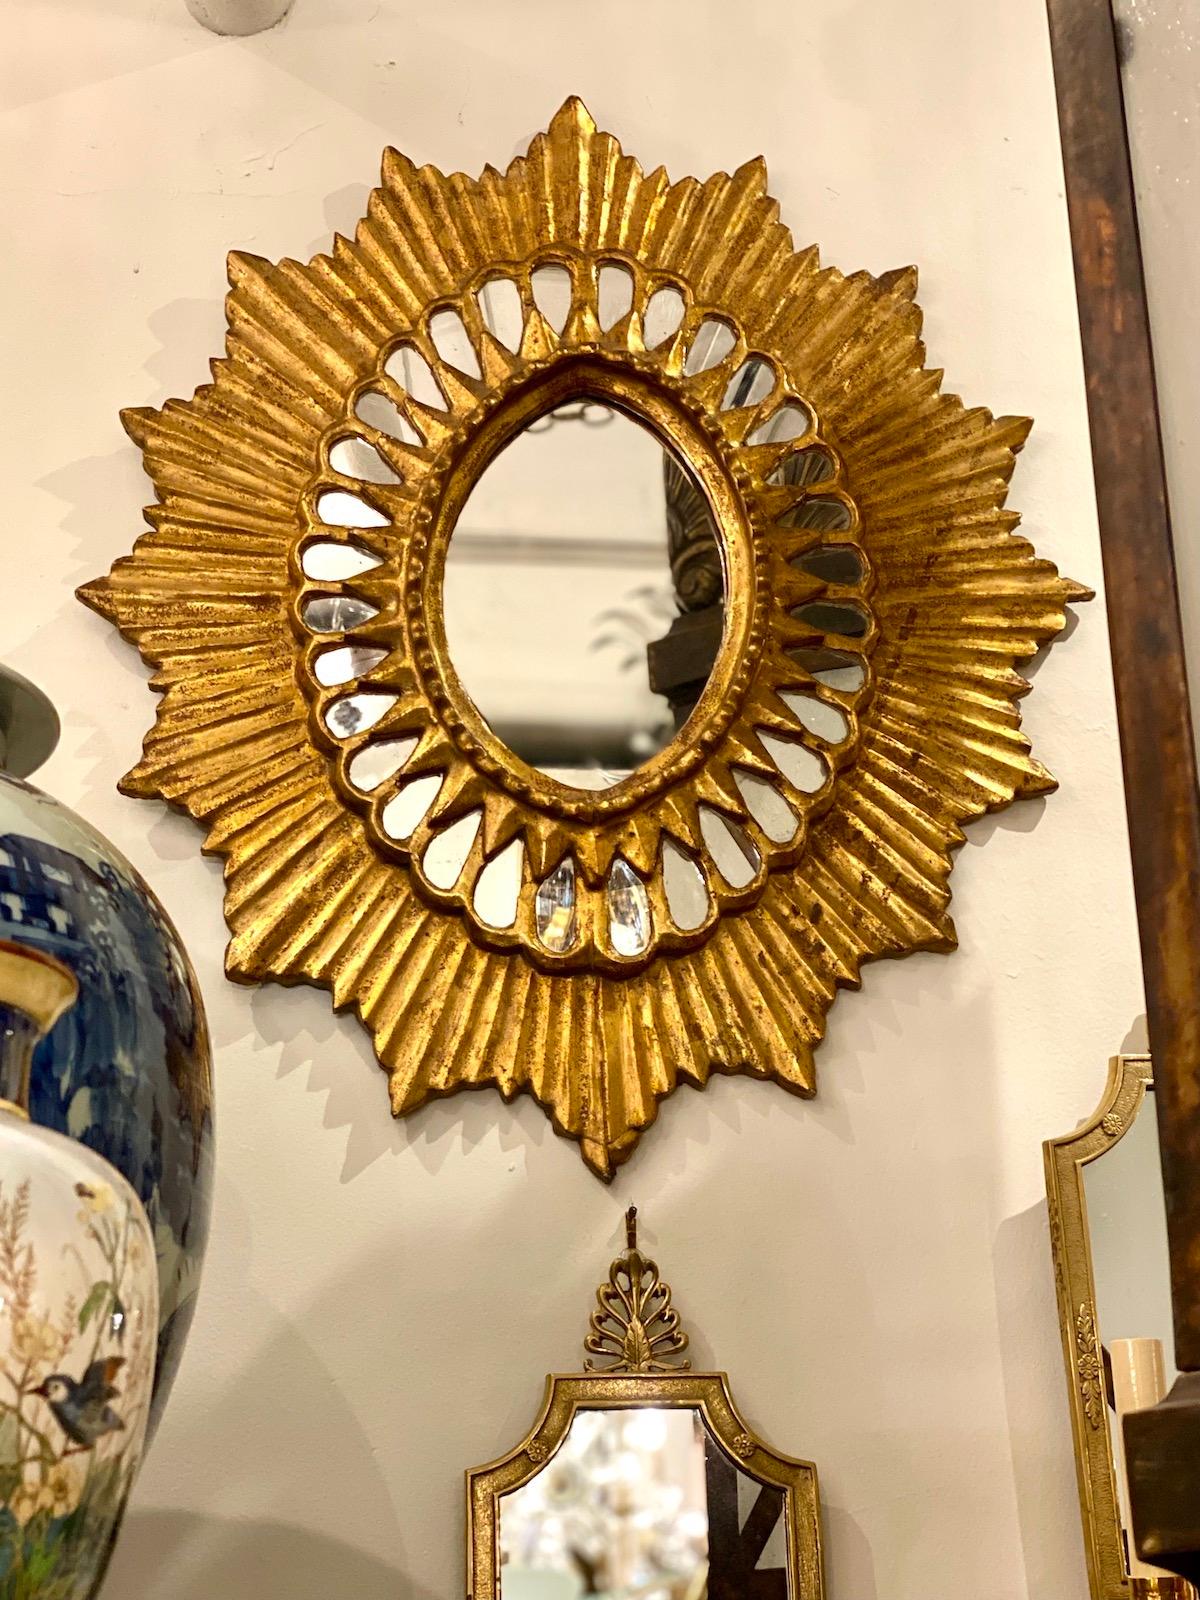 Un miroir espagnol doré au soleil datant des années 1920.

Mesures :
Hauteur : 24